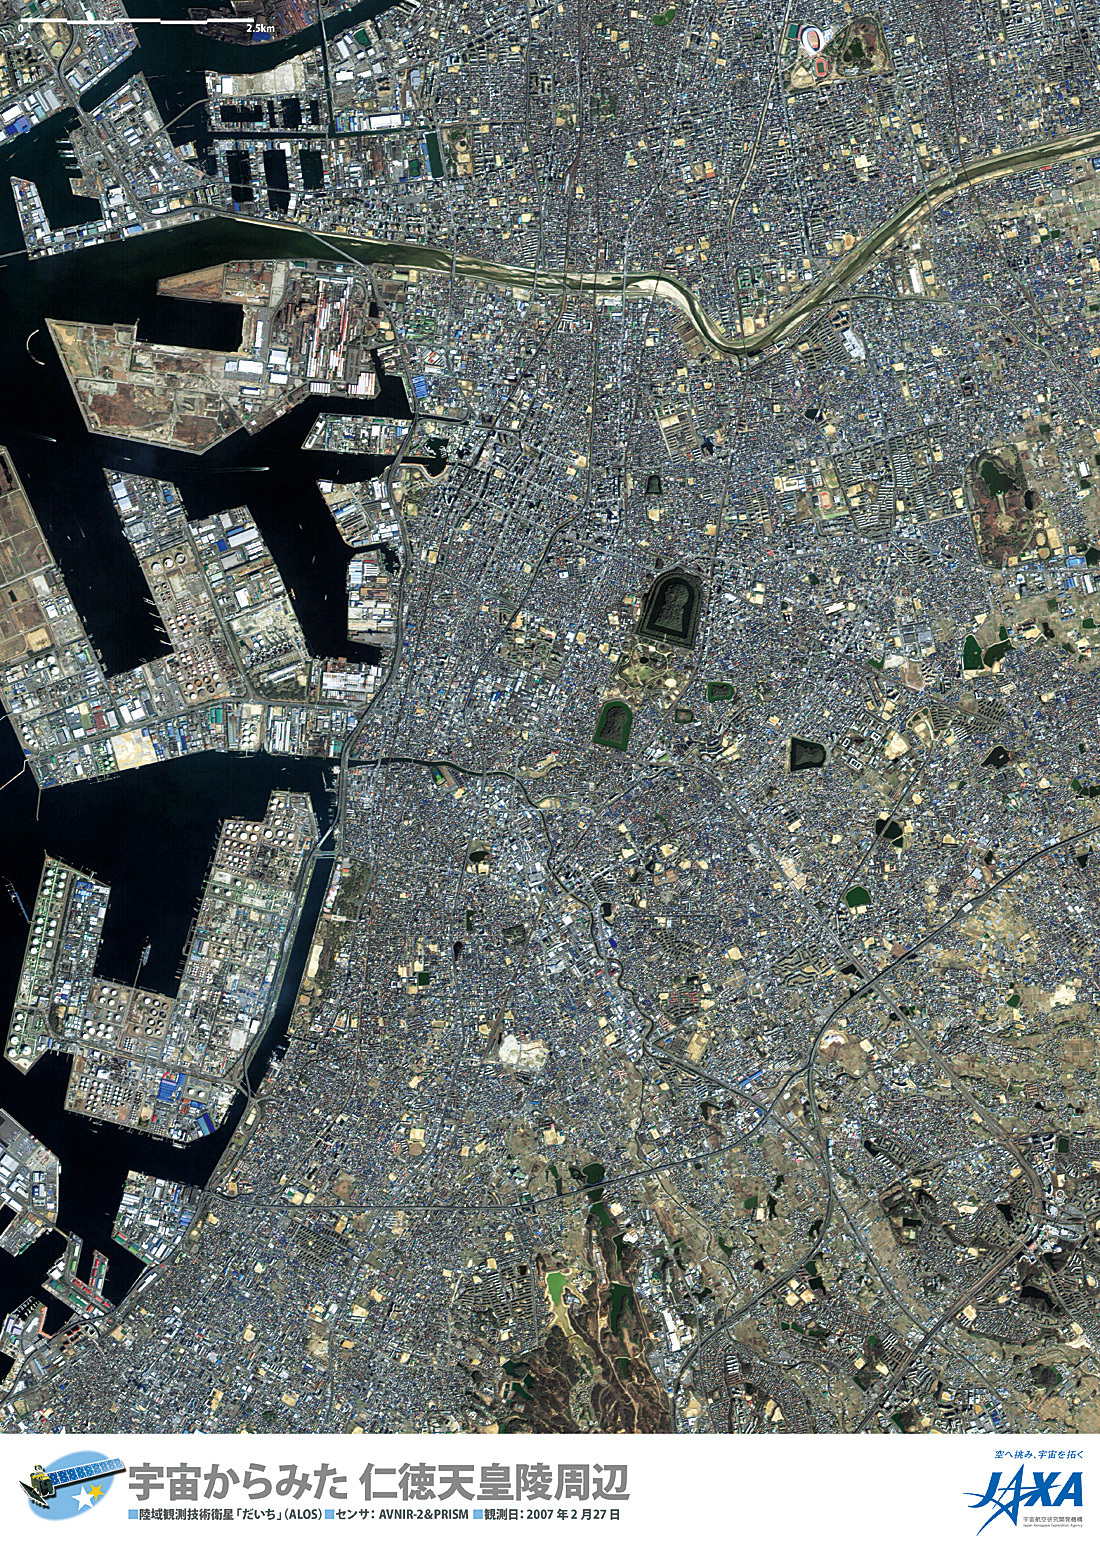 だいちから見た日本の都市 仁徳天皇陵周辺:衛星画像（ポスター仕上げ）